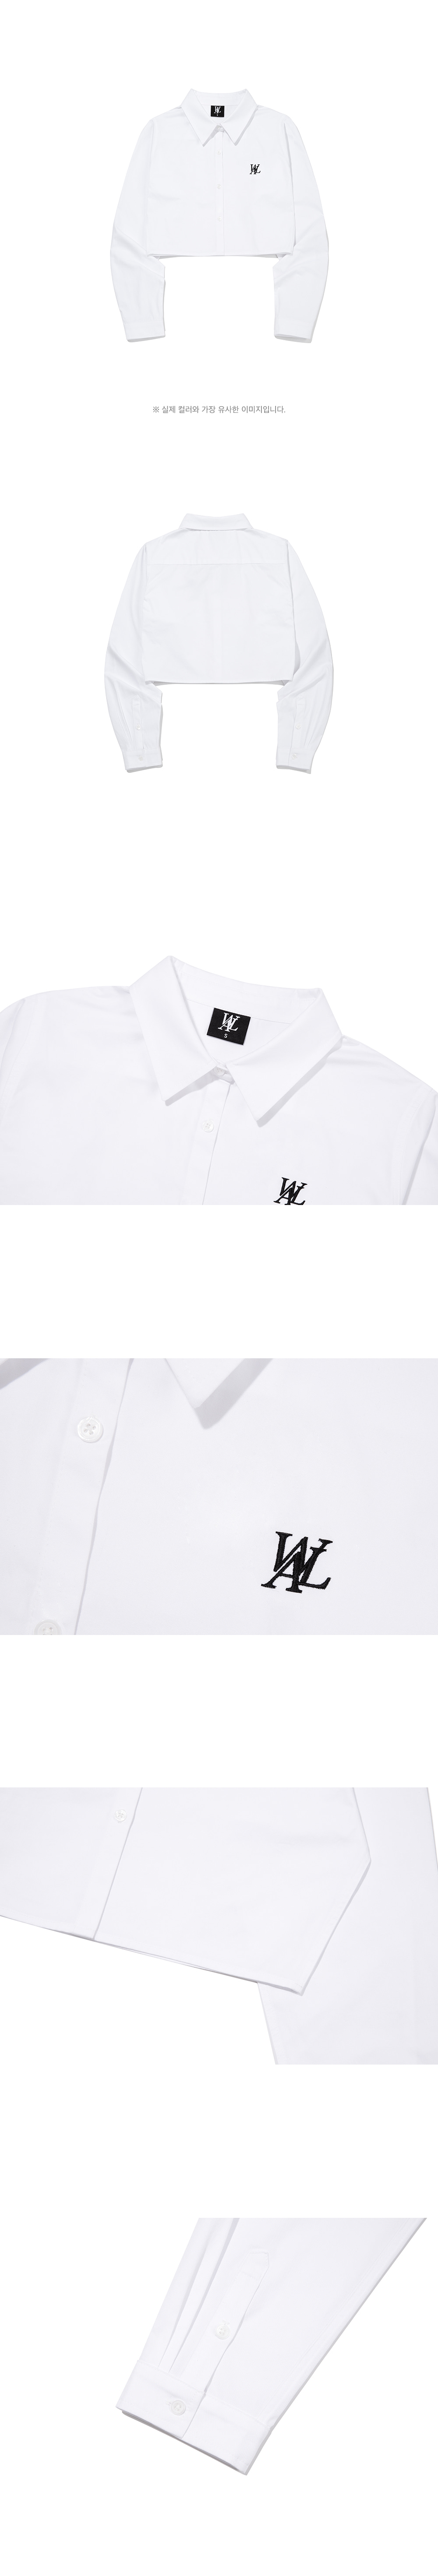 MUSINSA | WOOALONG Signature essential crop shirt - WHITE